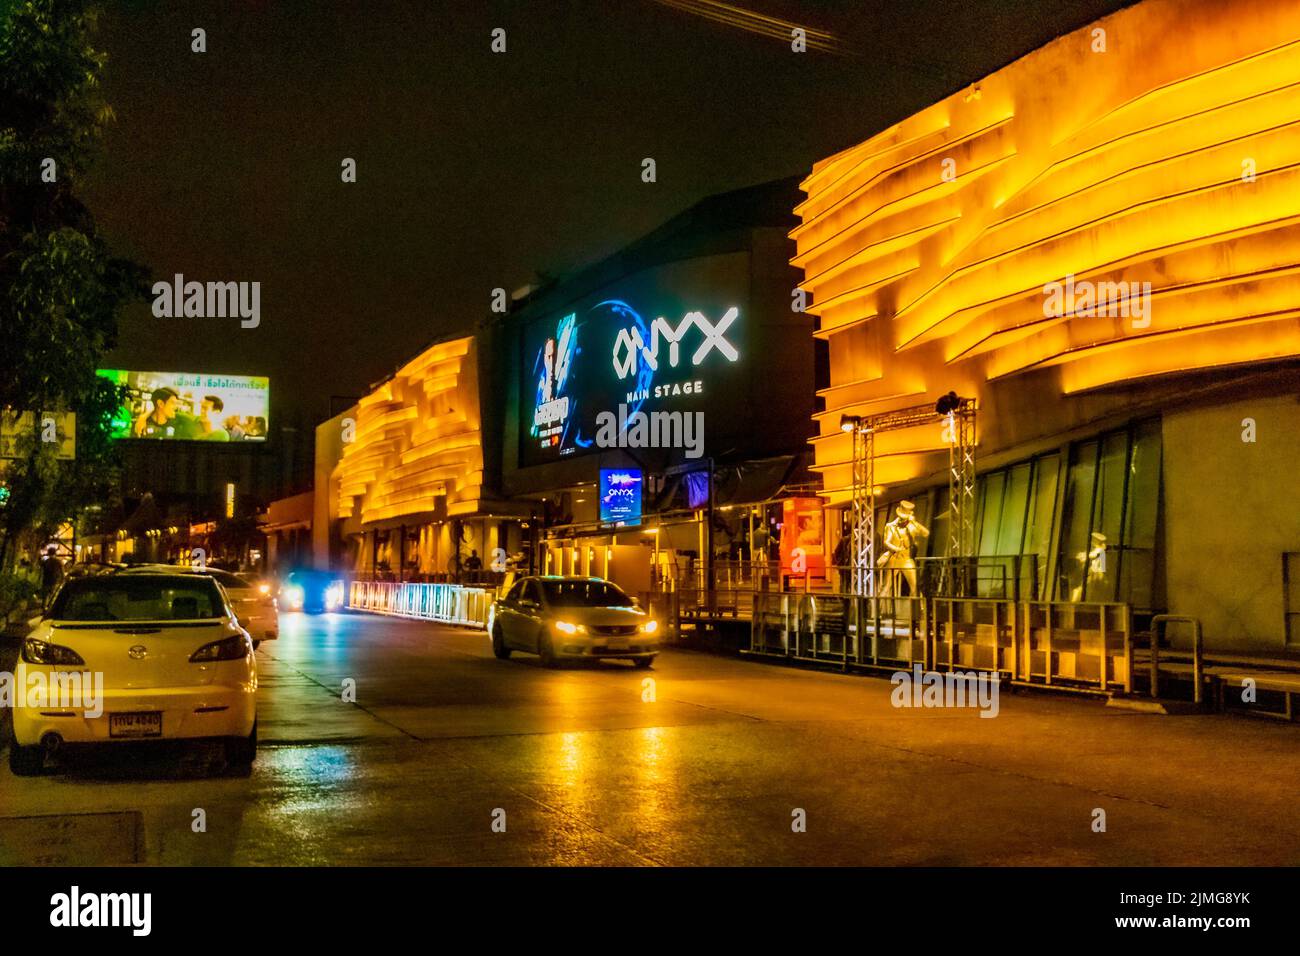 Vita notturna e luci colorate presso l'edificio Onyx a Bangkok, Thailandia. Foto Stock